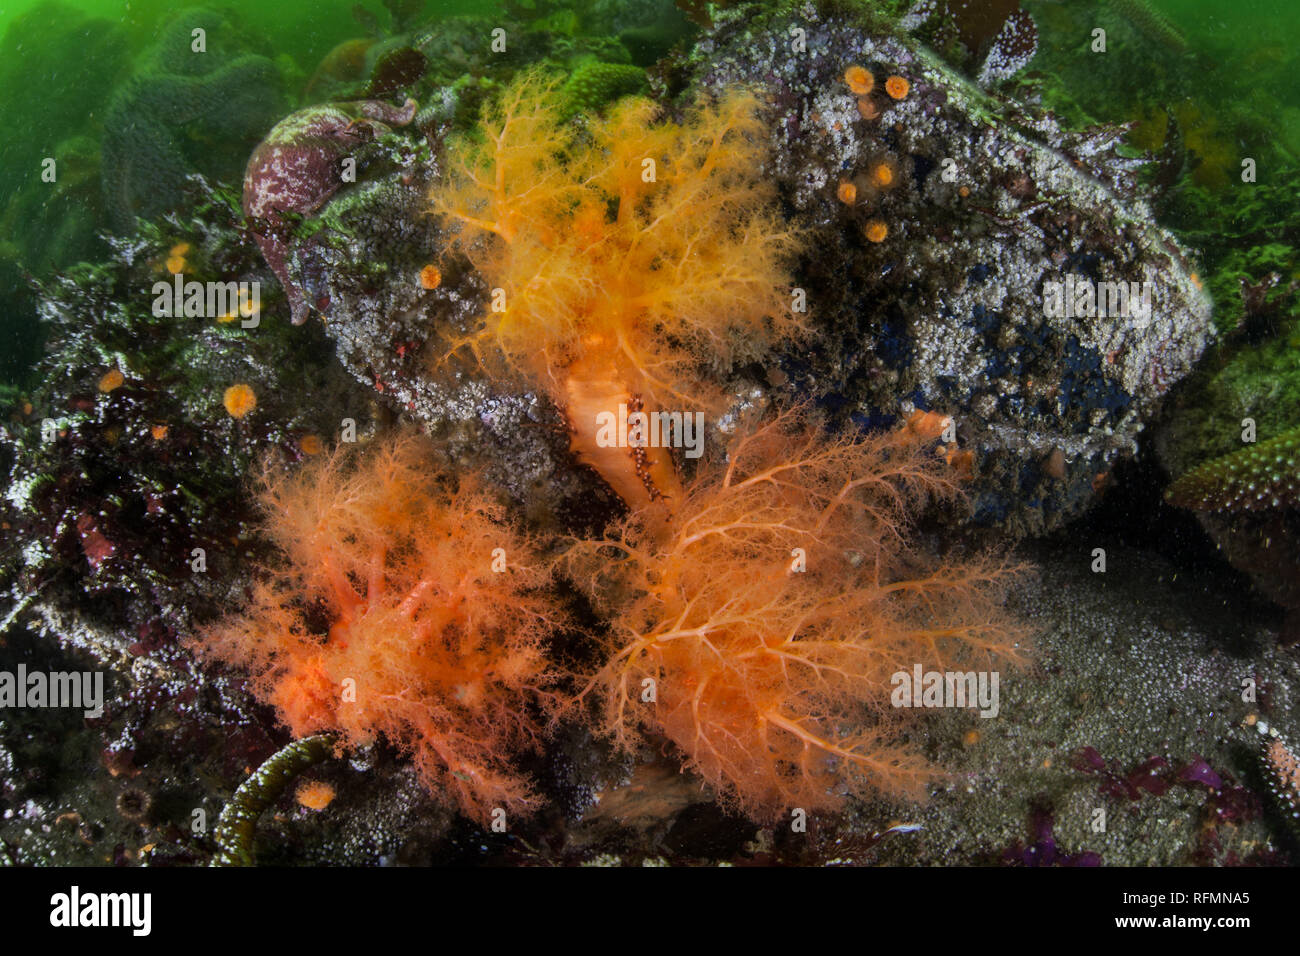 Les concombres de mer orange, Cucumaria miniata, étirent leurs tentacules d'alimentation pour attraper du plancton sur le fond marin d'une forêt de varech à Monterey, en Californie Banque D'Images